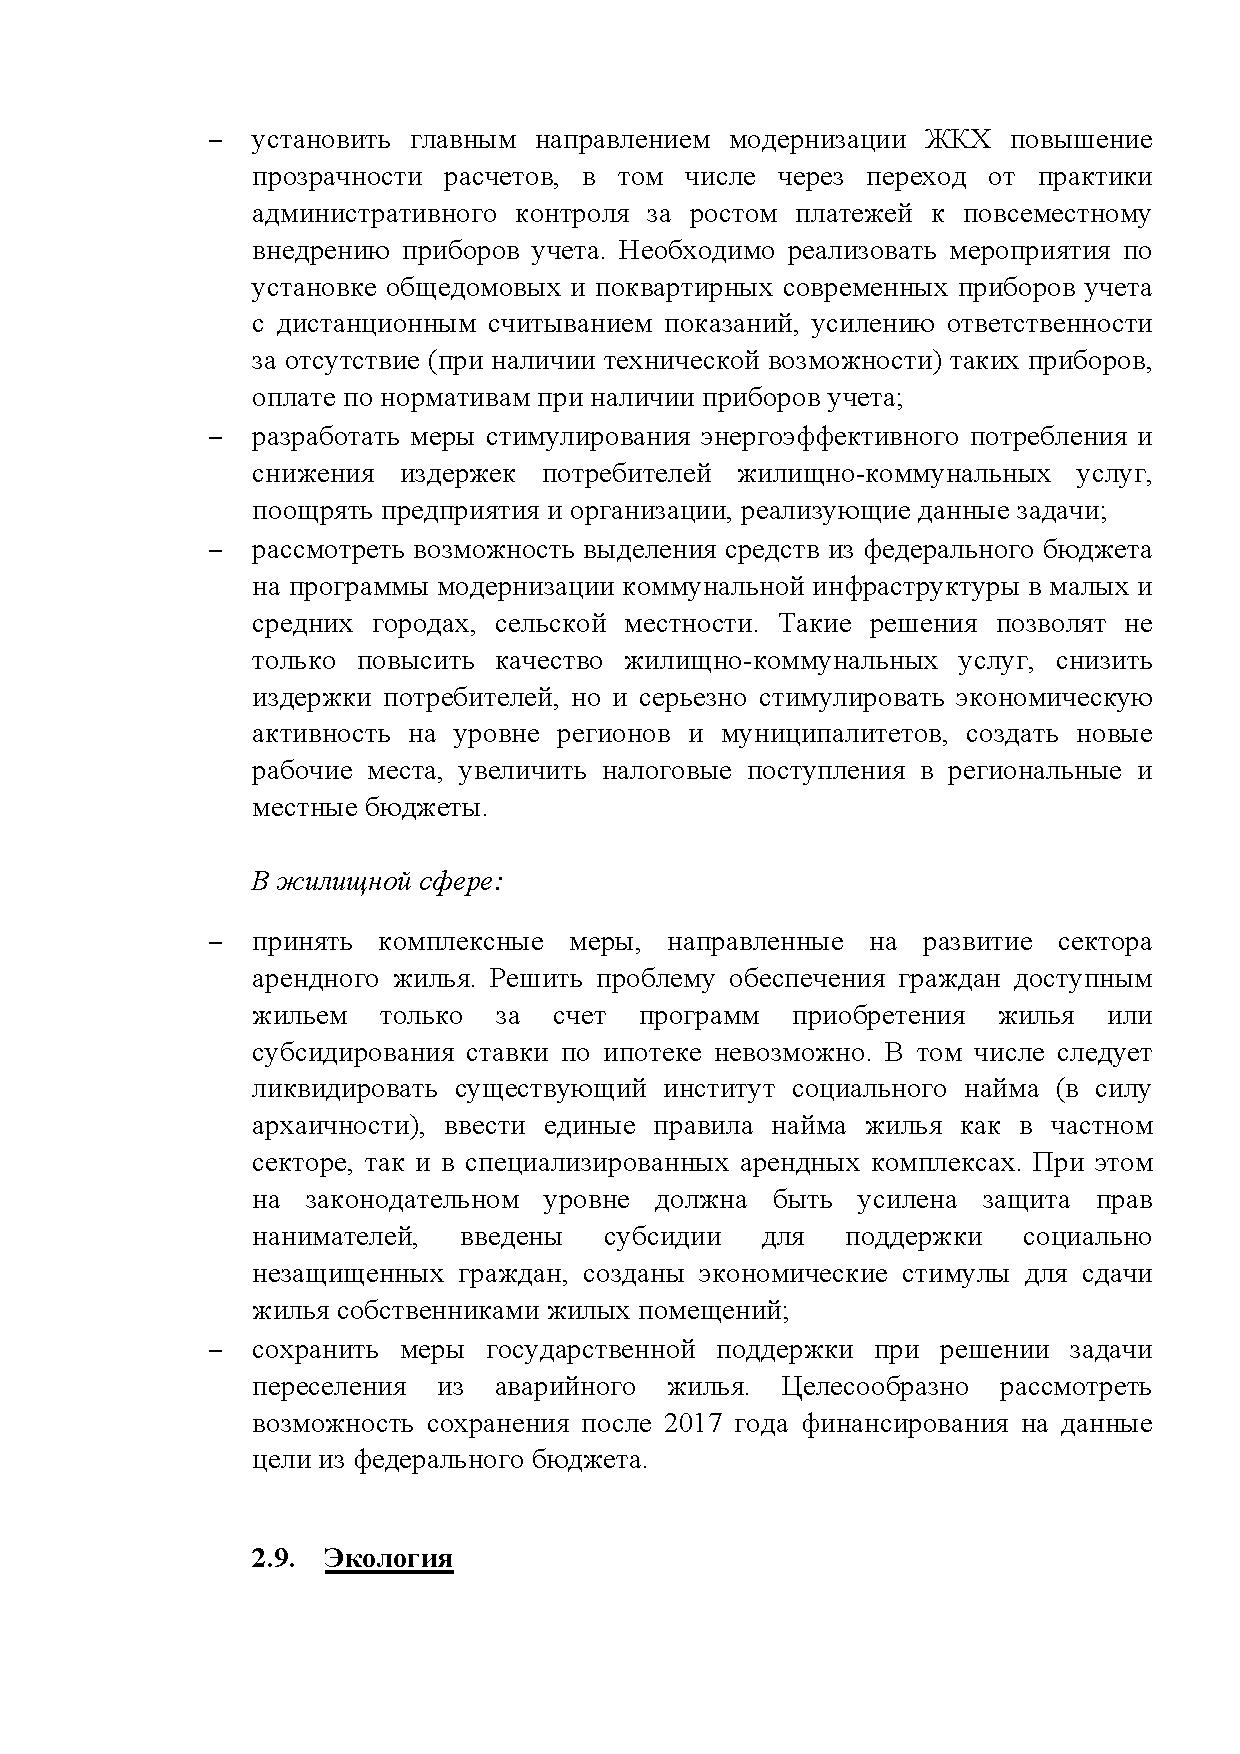  Опубликованы Предложения Общероссийского гражданского форума 2015 - фото 42